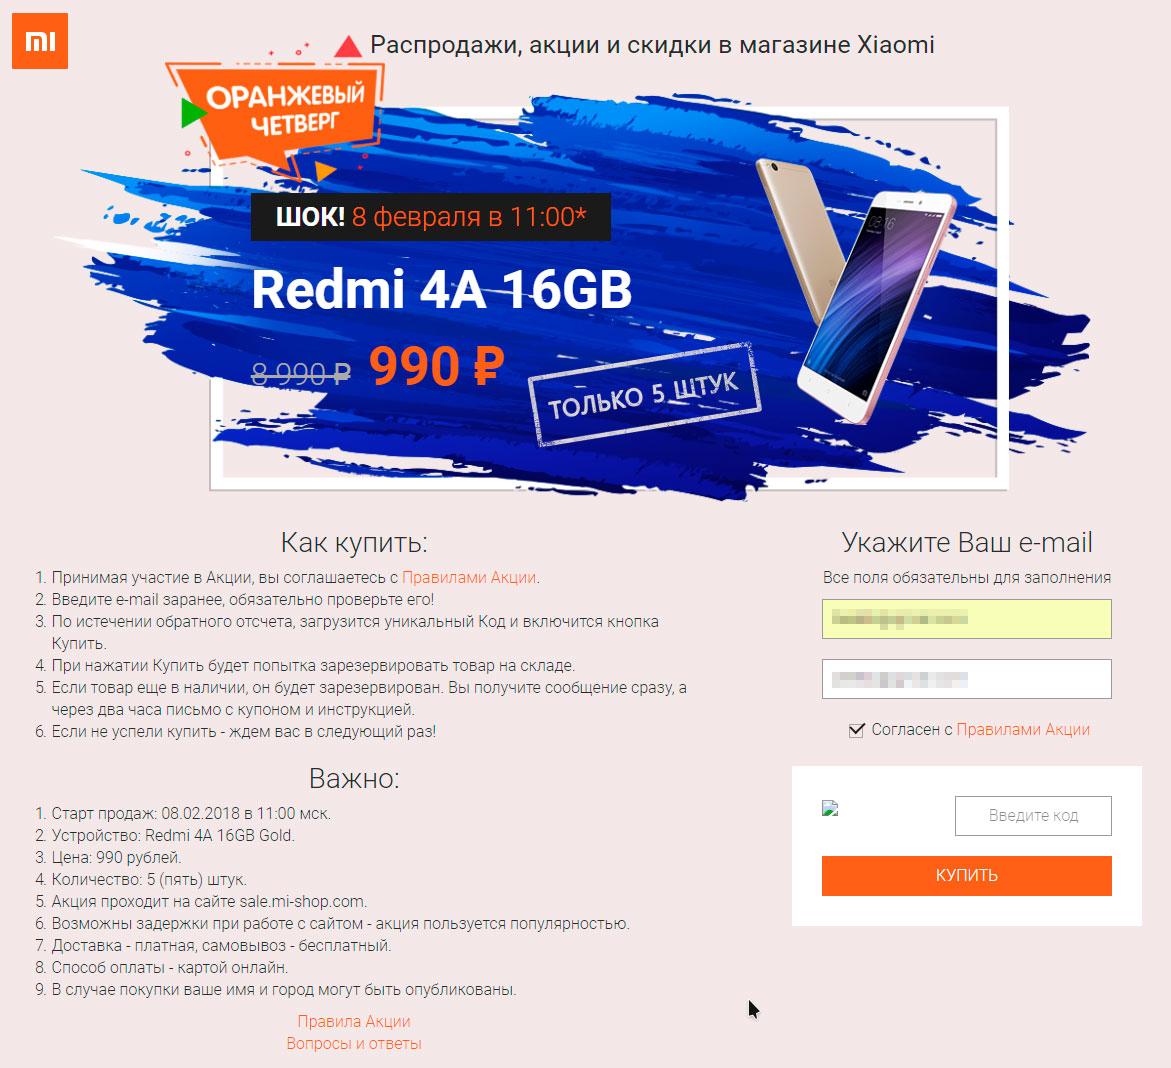 Желающие купить Redmi 4A за 990 рублей положили сайт интернет-магазина Xiaomi в России